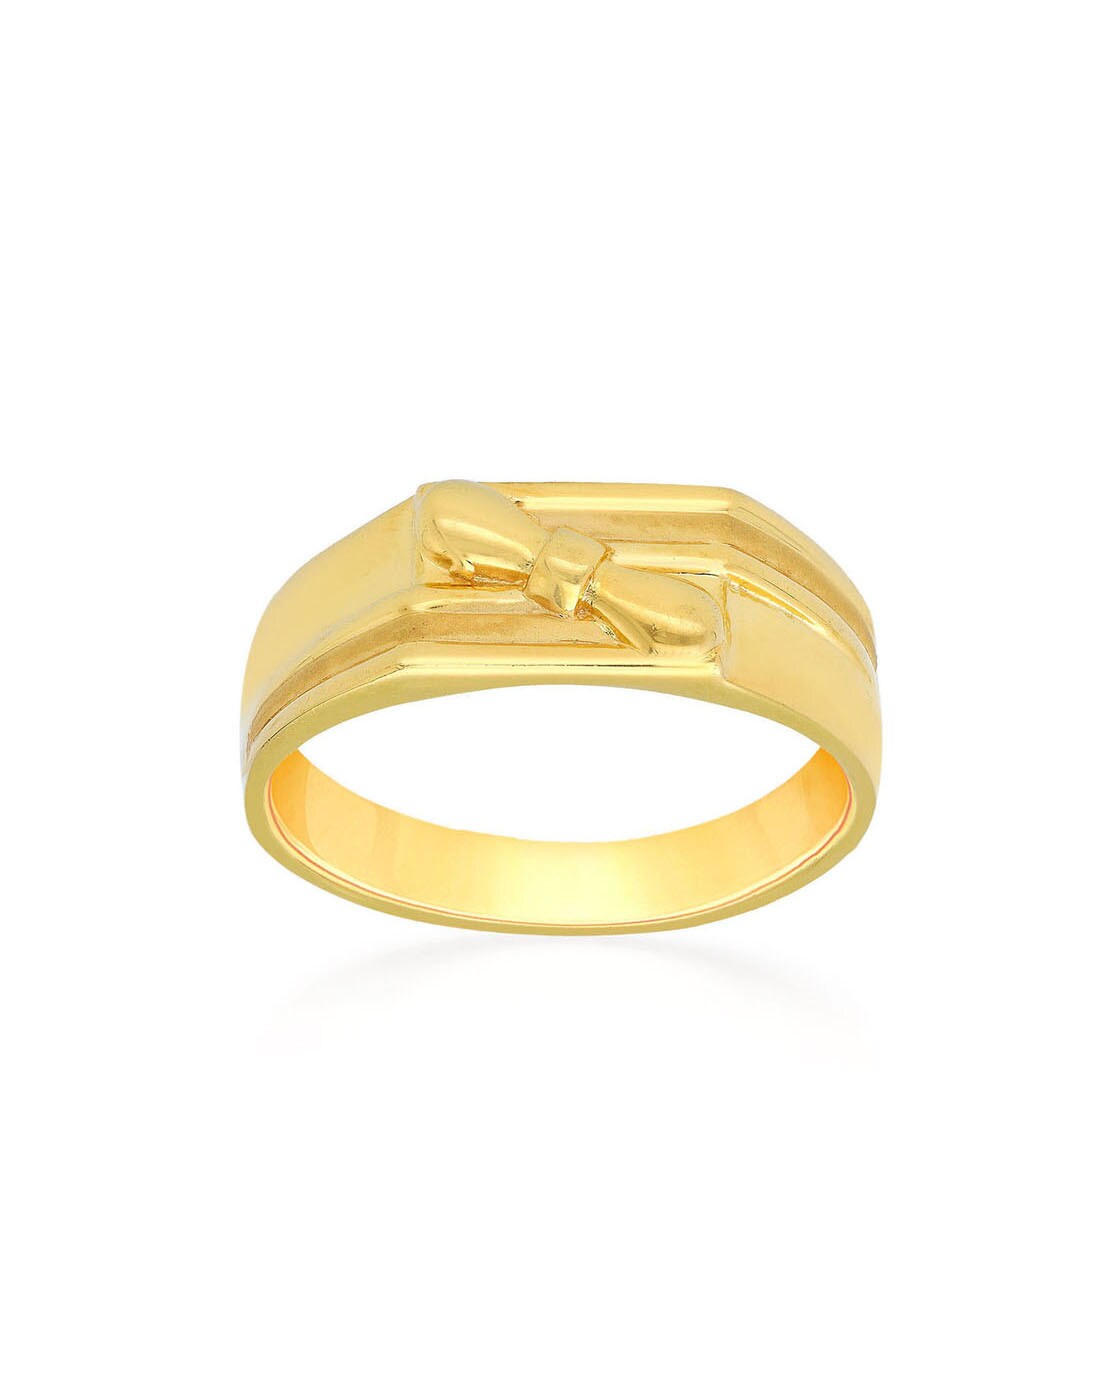 Malabar Gold Ring Design Best Sale - www.puzzlewood.net 1696020705